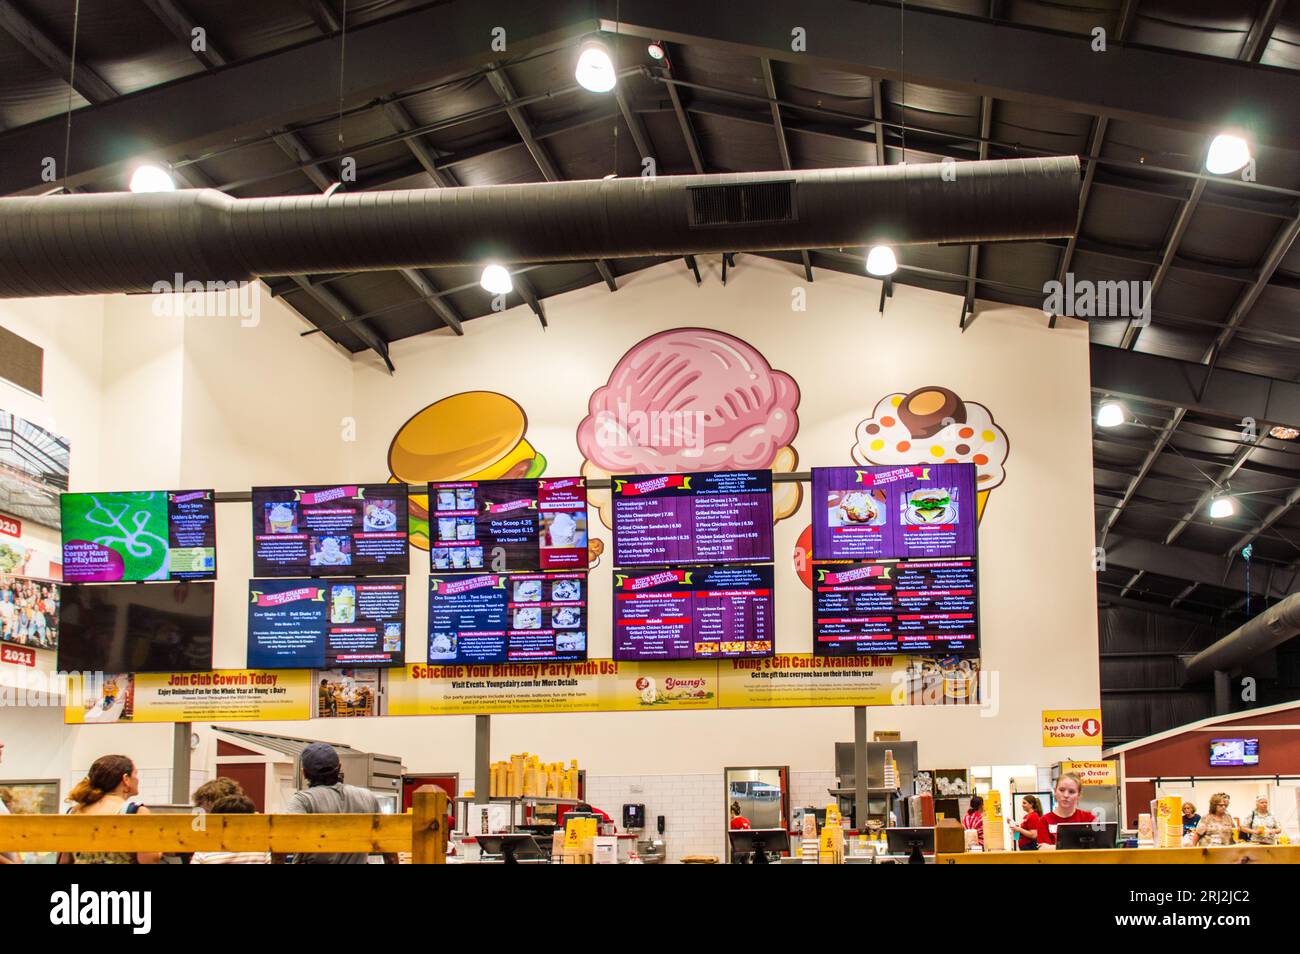 Menu de nourriture et de crème glacée sur écran numérique dans la ferme Young's Jersey Banque D'Images